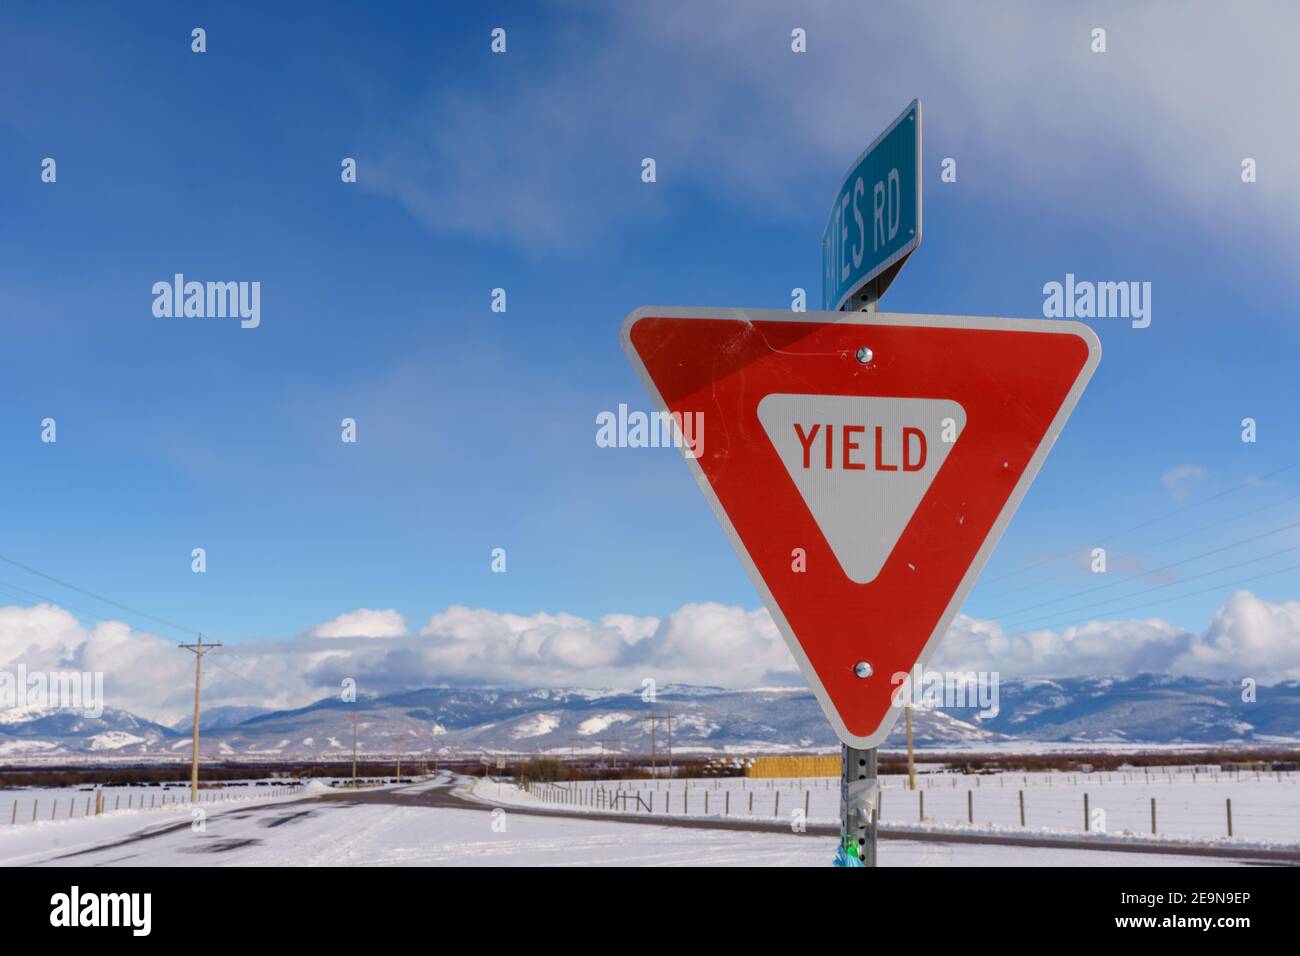 Ertragszeichen in Teton Valley Idaho mit Himmel und Schnee Winterhintergrund Stockfoto